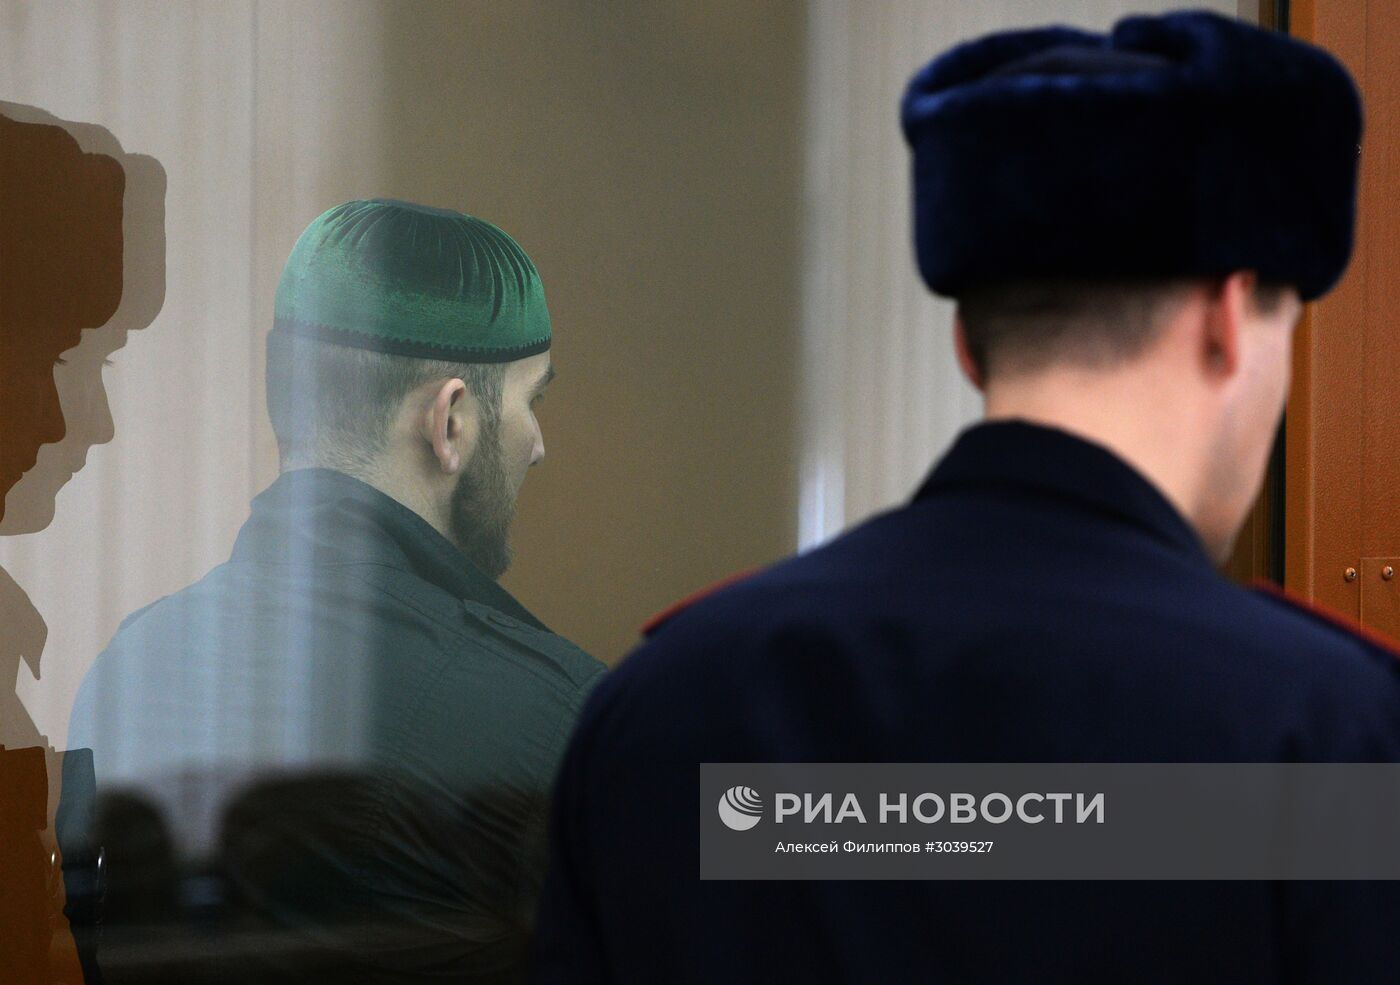 Заседание суда по делу об убийстве политика Б. Немцова